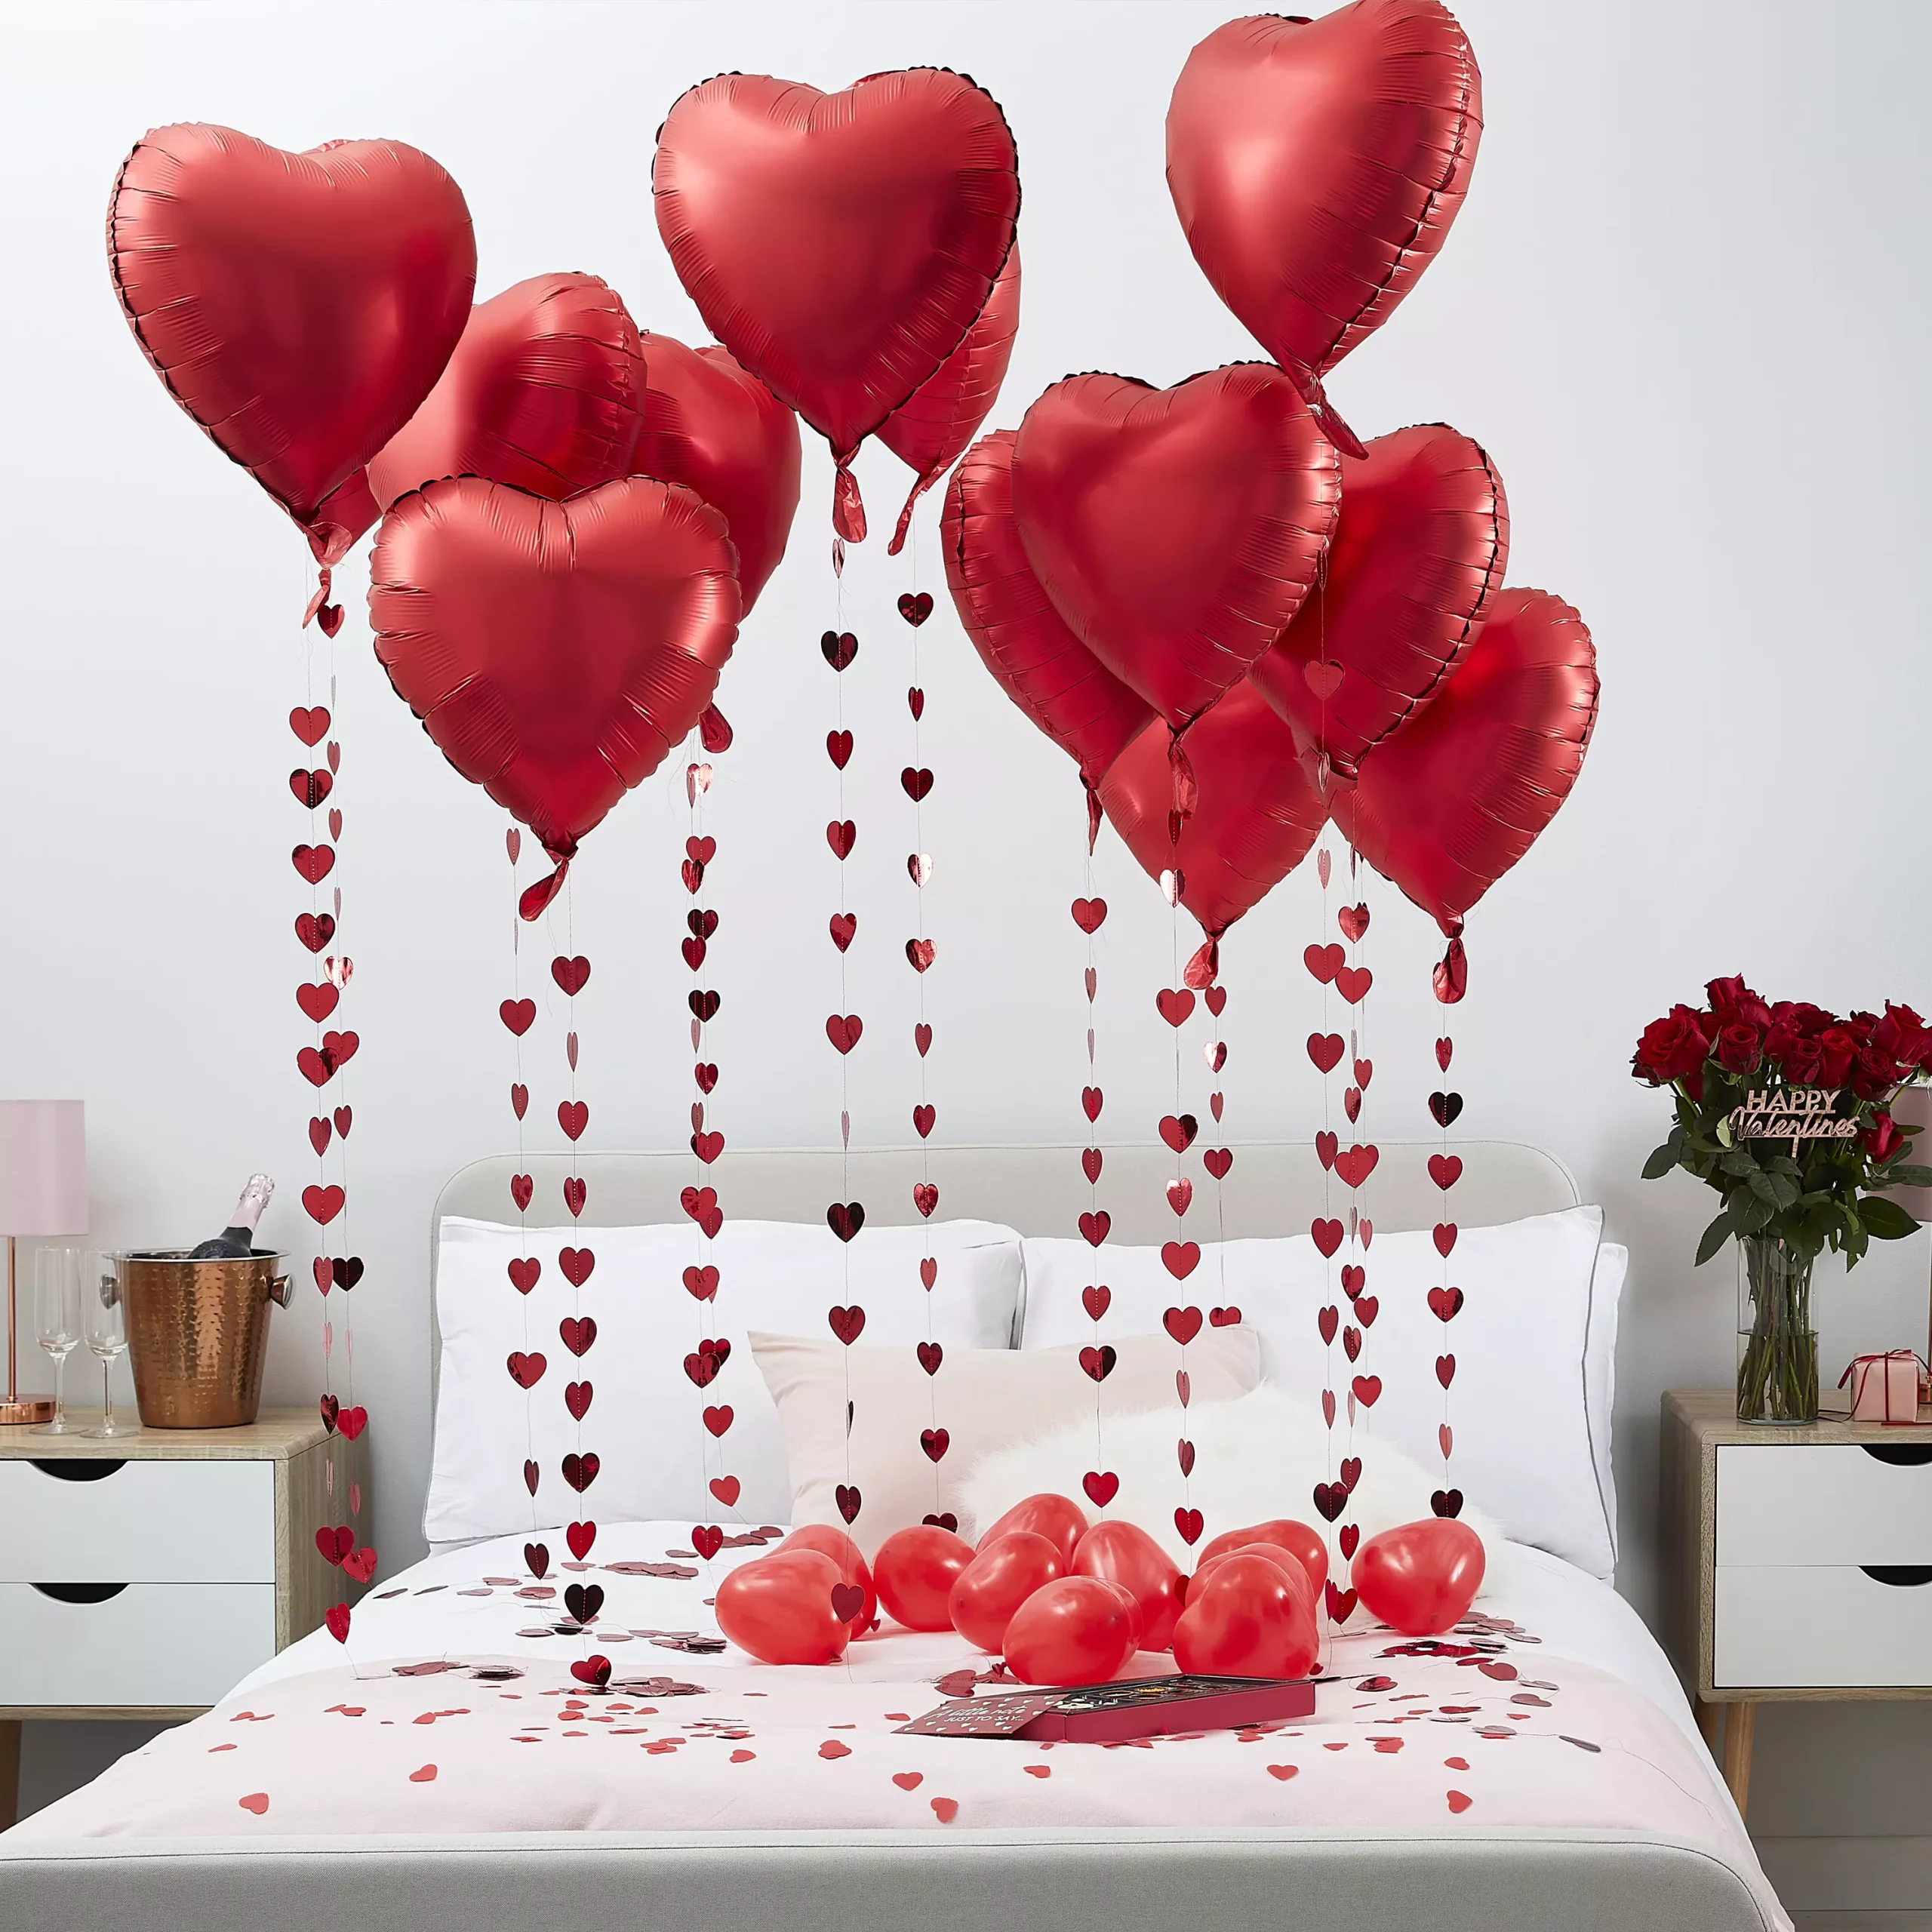 Valentine’s Day balloon decoration